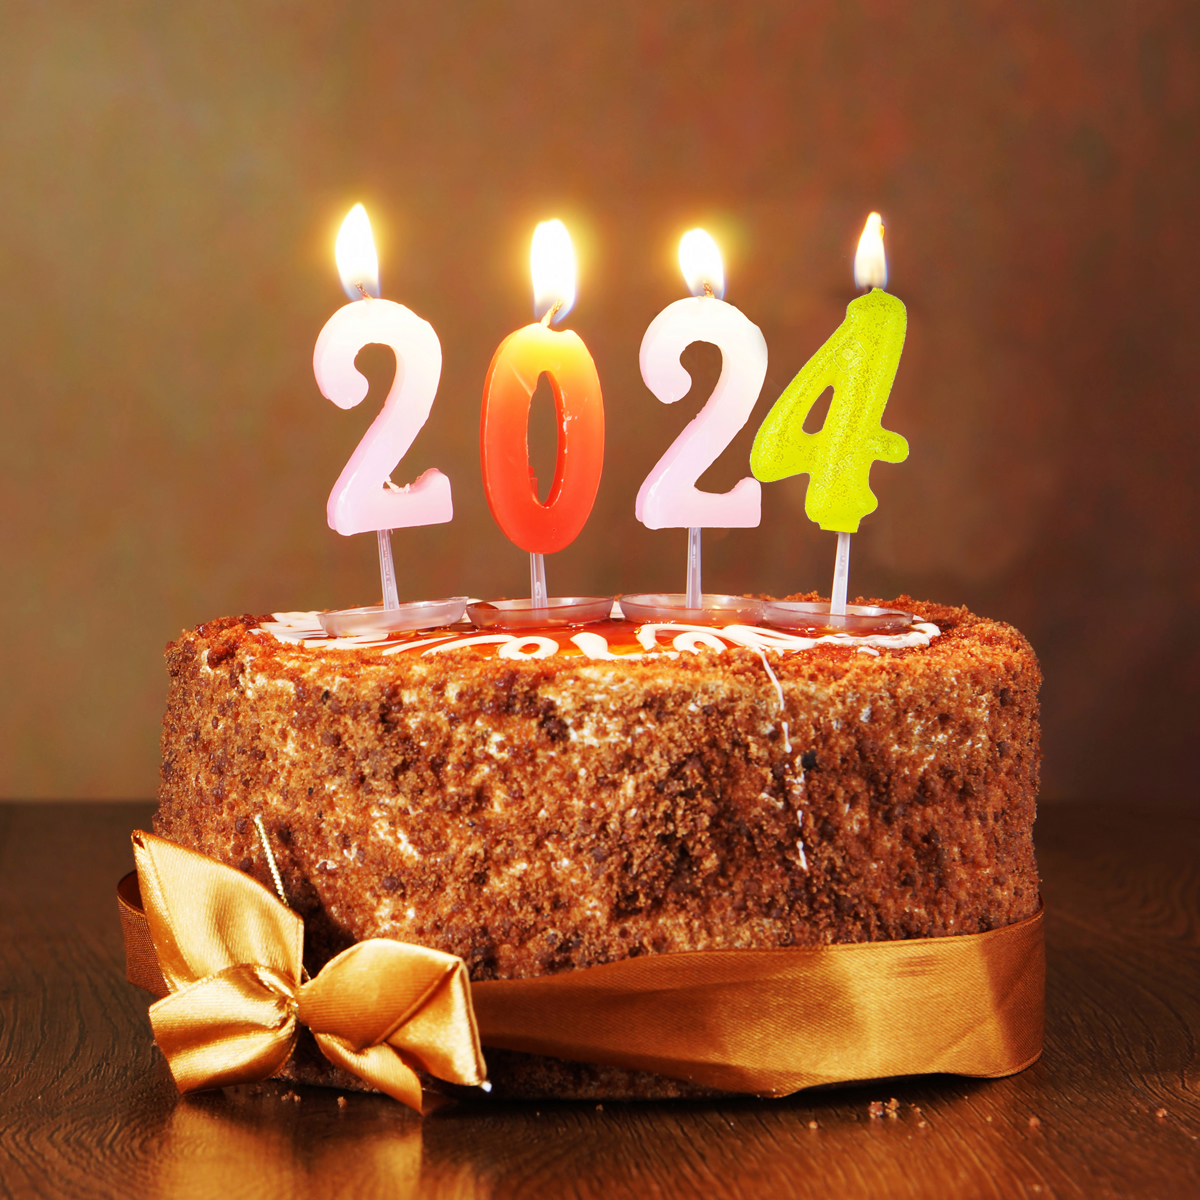 Image de gâteau au chocolat pour célébrer la nouvelle année 2024